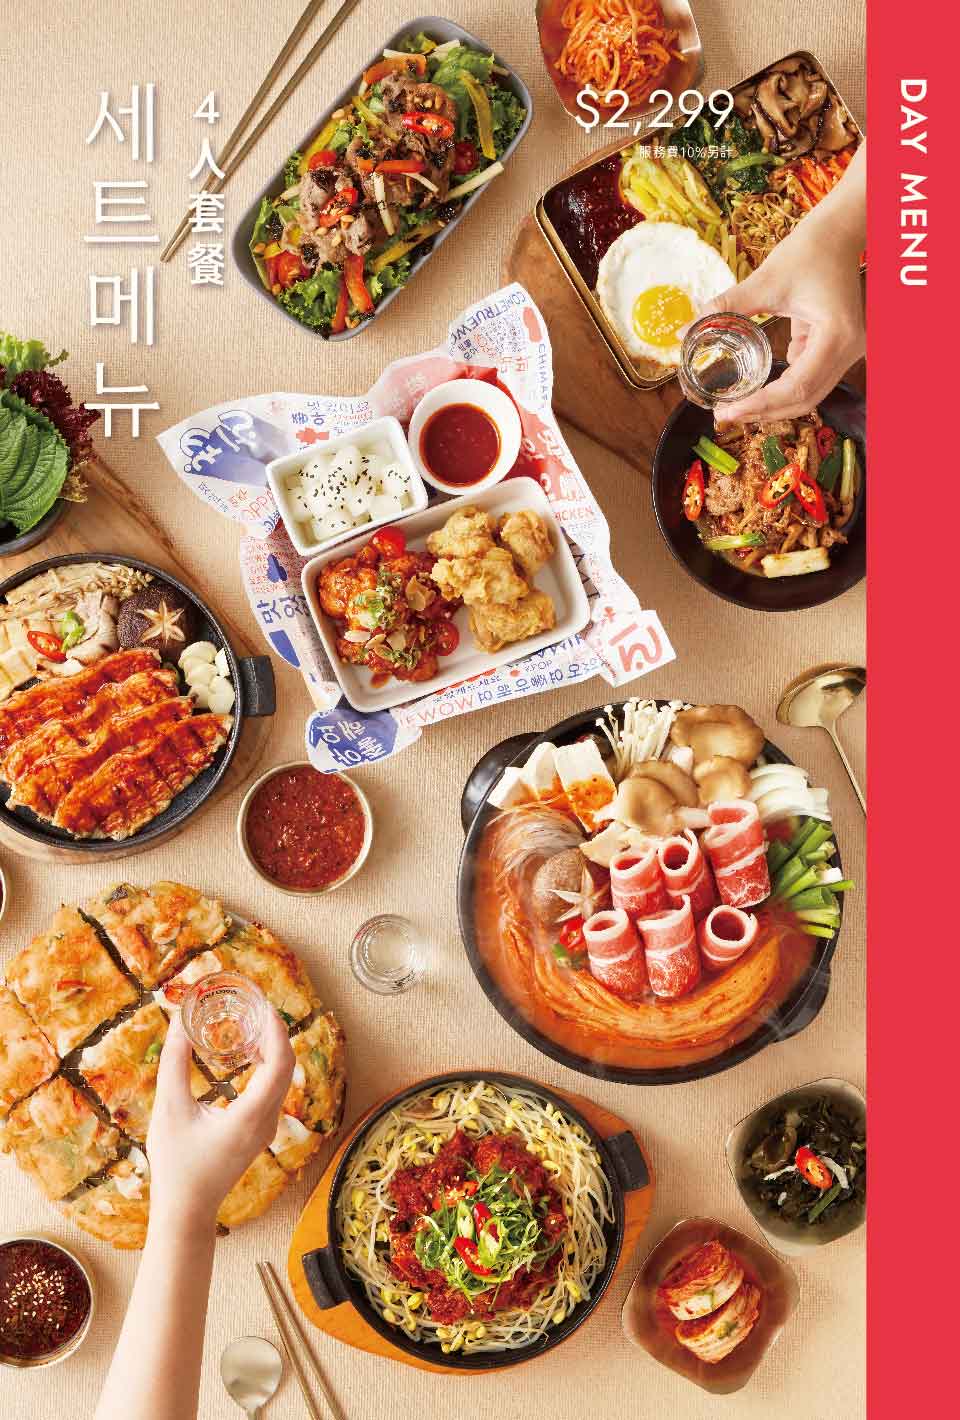 王品韓式料理「初瓦台中店」要來啦！開幕時間、位置、菜單搶先看